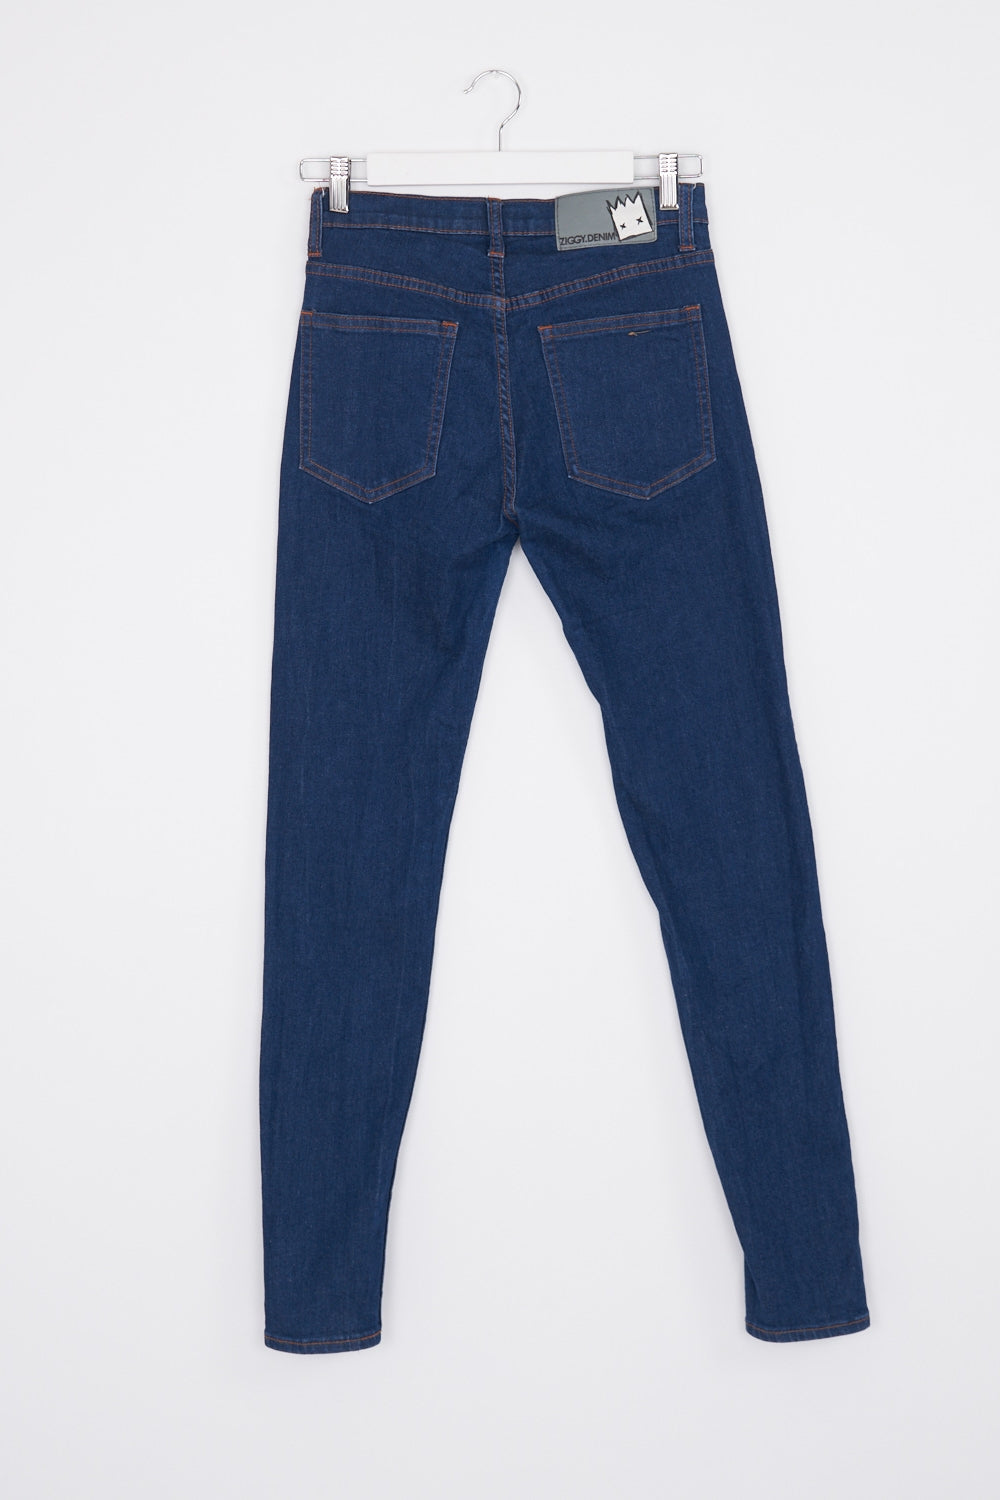 Ziggy Blue Skinny Jeans AU 9 / 27